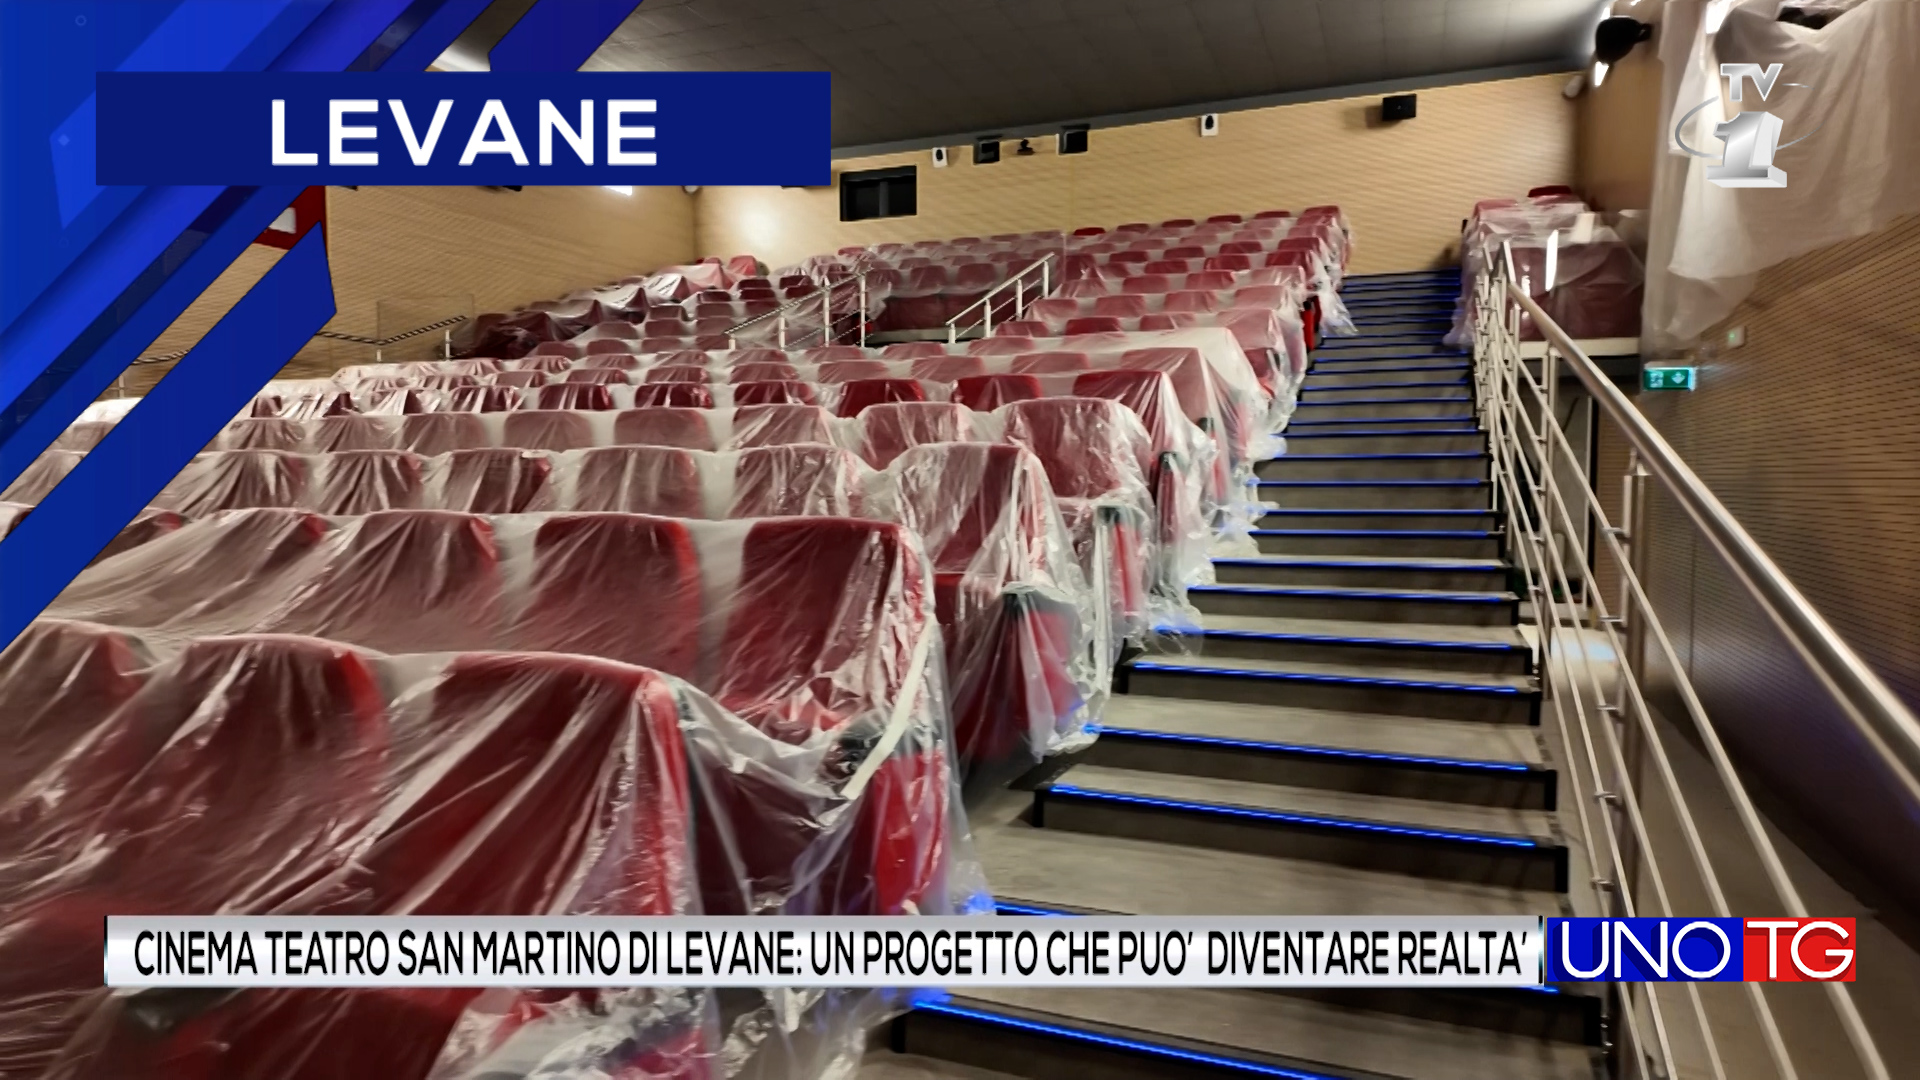 Cinema Teatro San Martino di Levane: un progetto che può diventare realtà